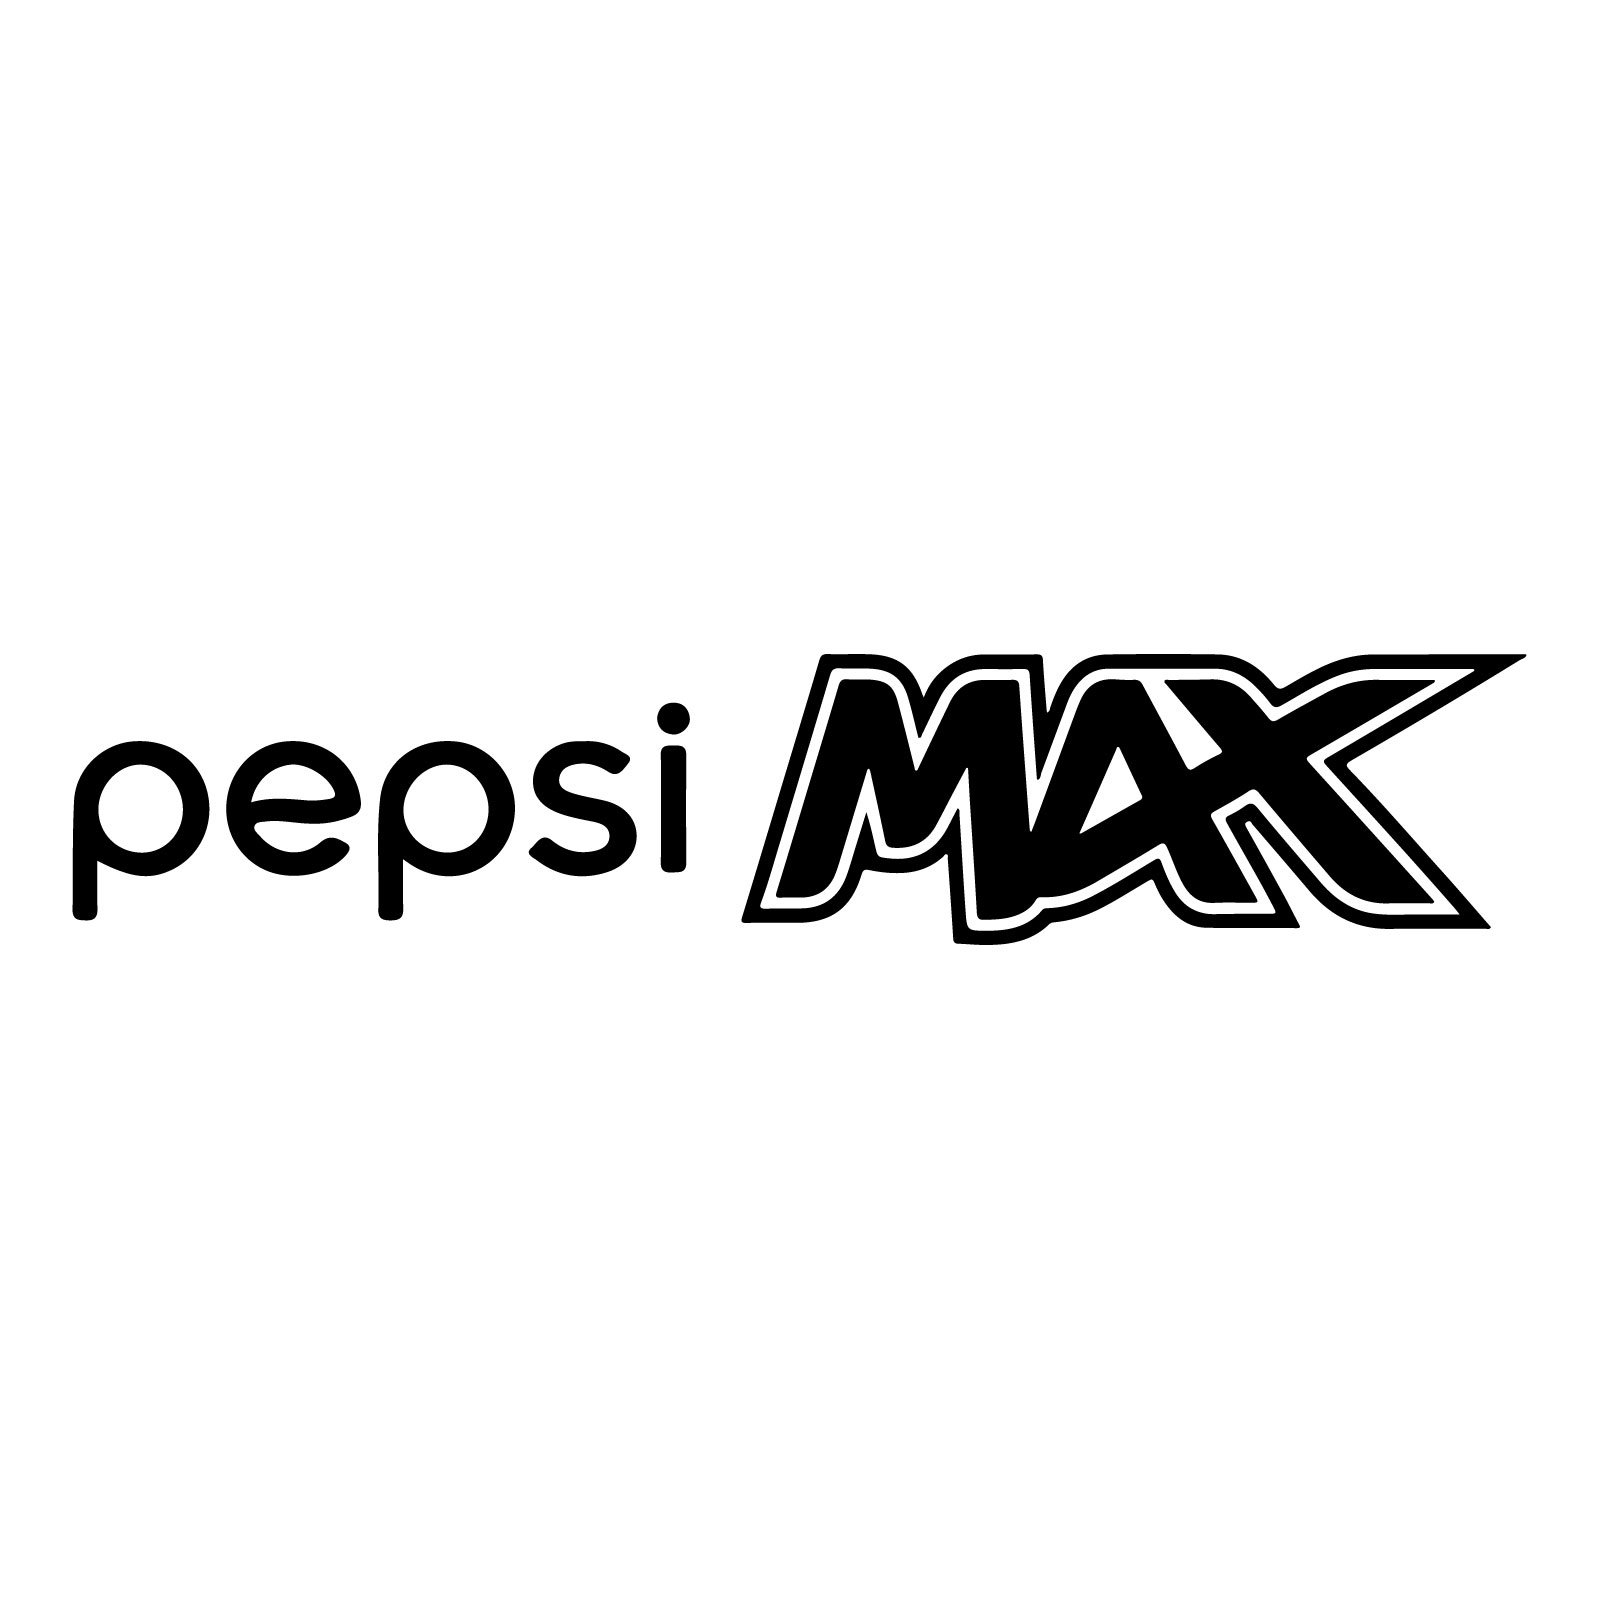 Pepsi Max Logo